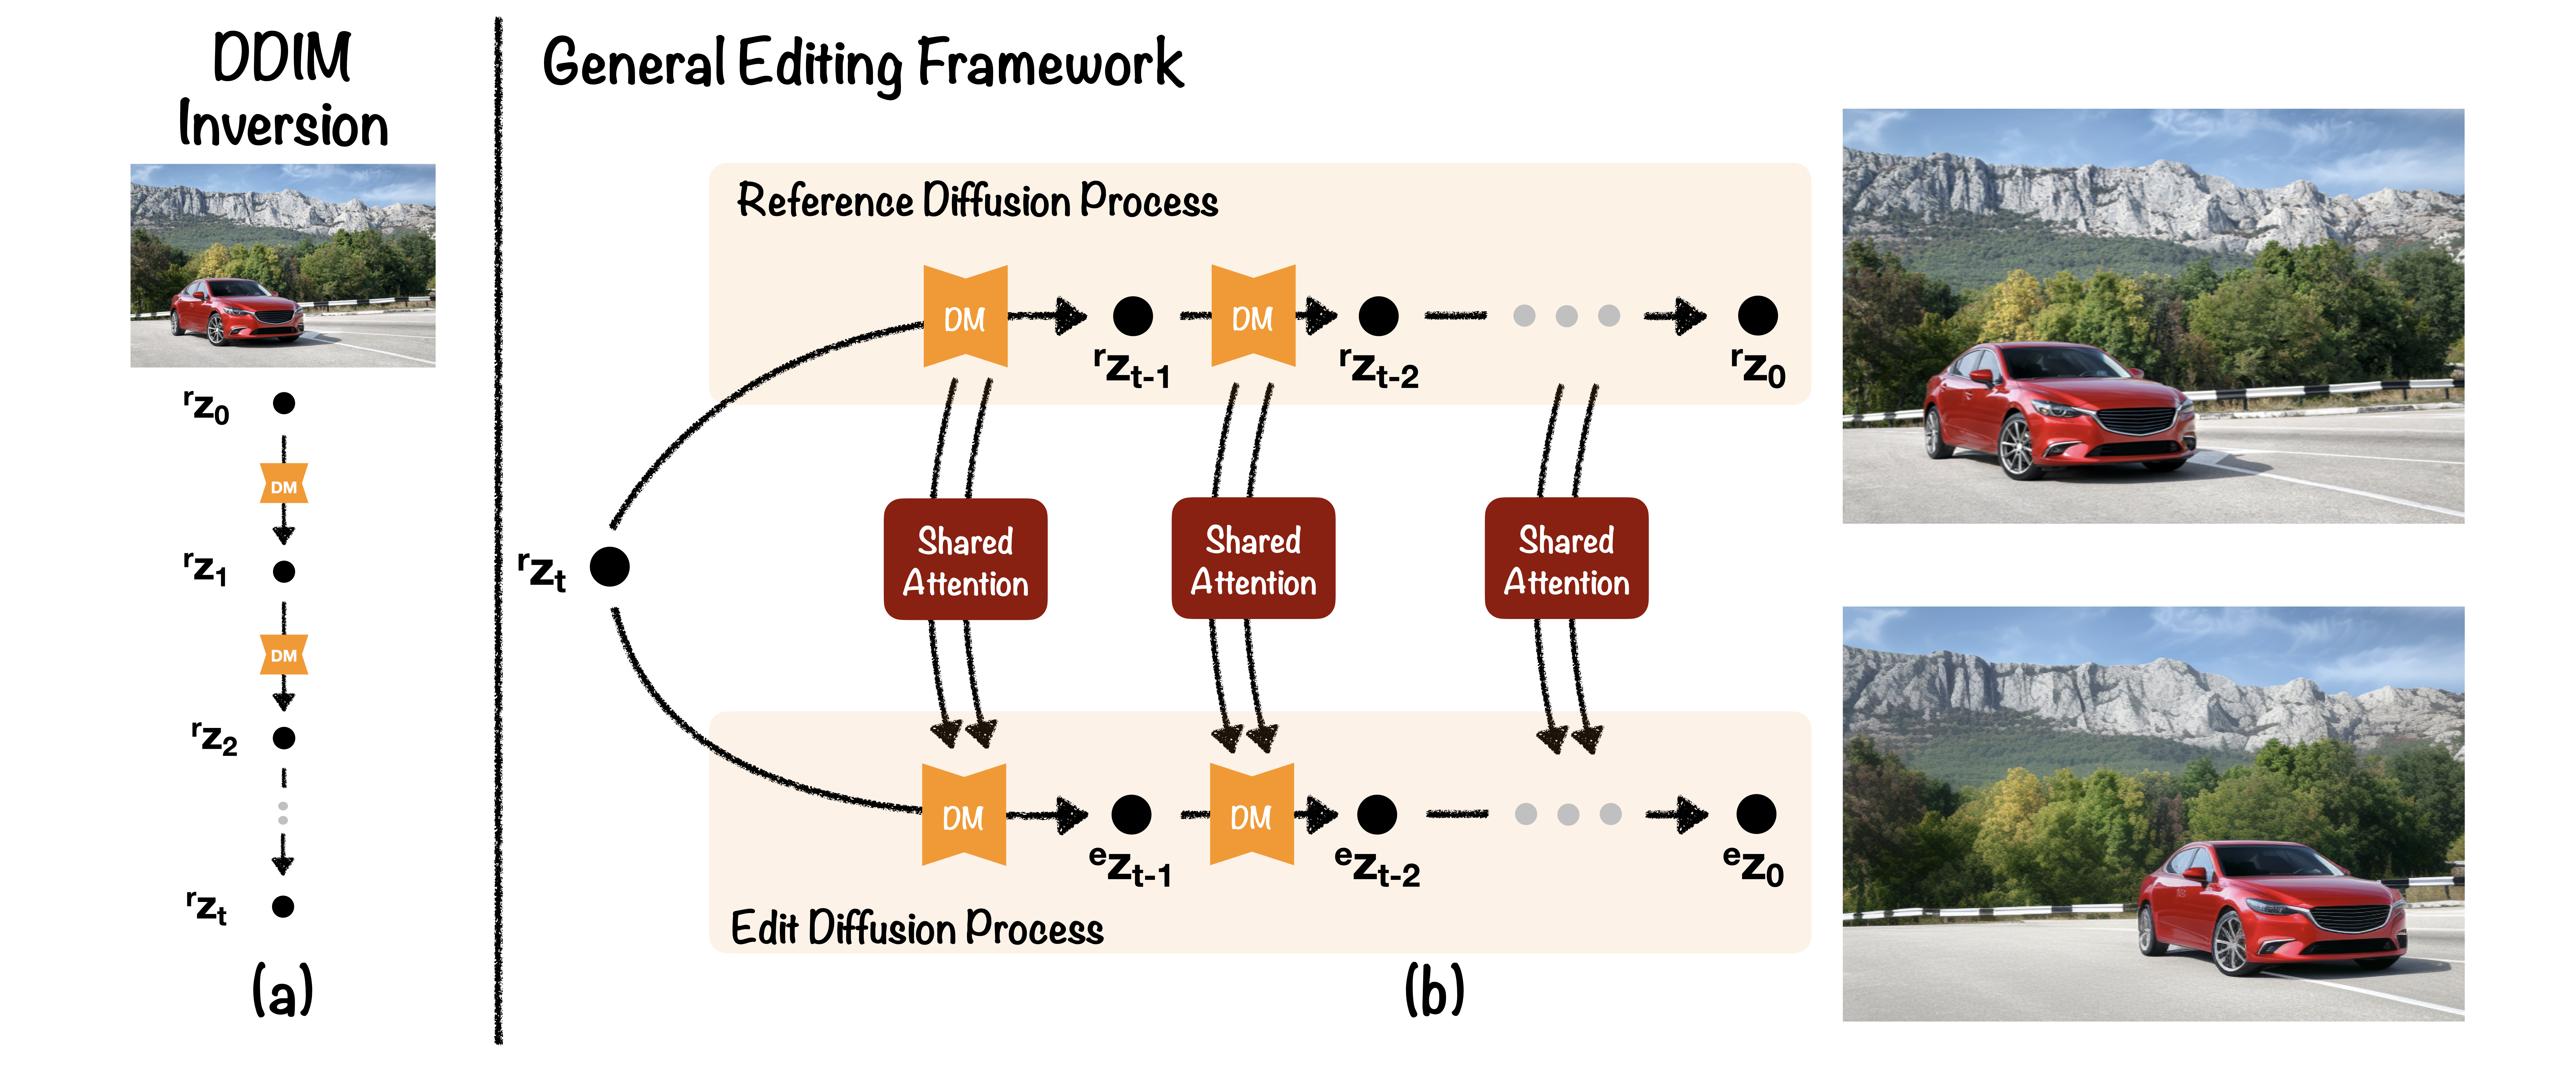 General Editing Framework